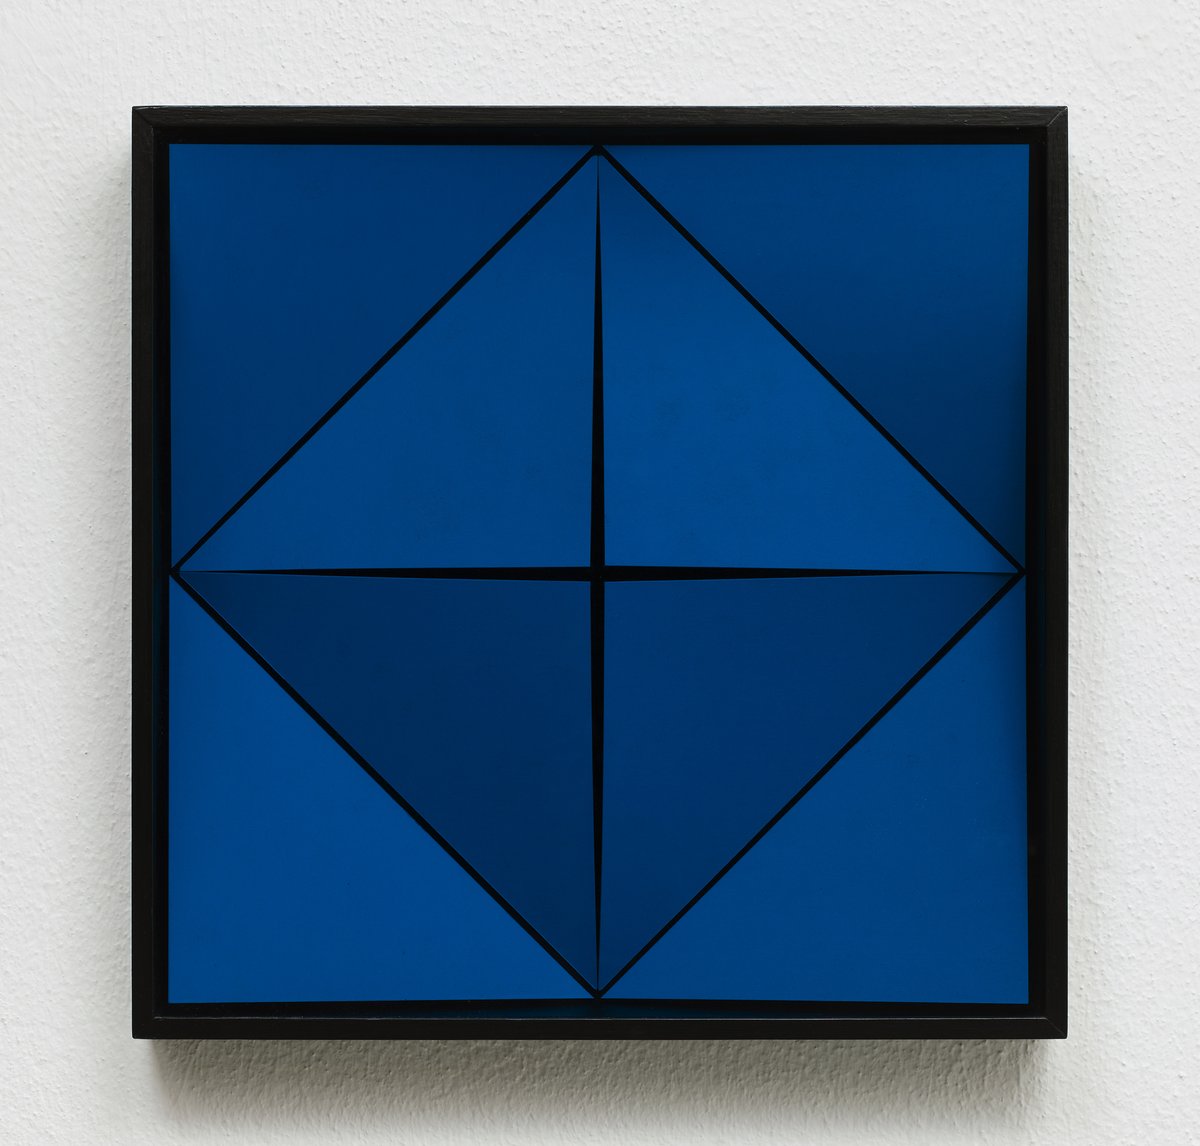 klaus staudt, &quot;relief – MU X / 1 CB&quot; (1969), wood, acrylic paint, acrylic glass, 40 x 40 x 6 cm